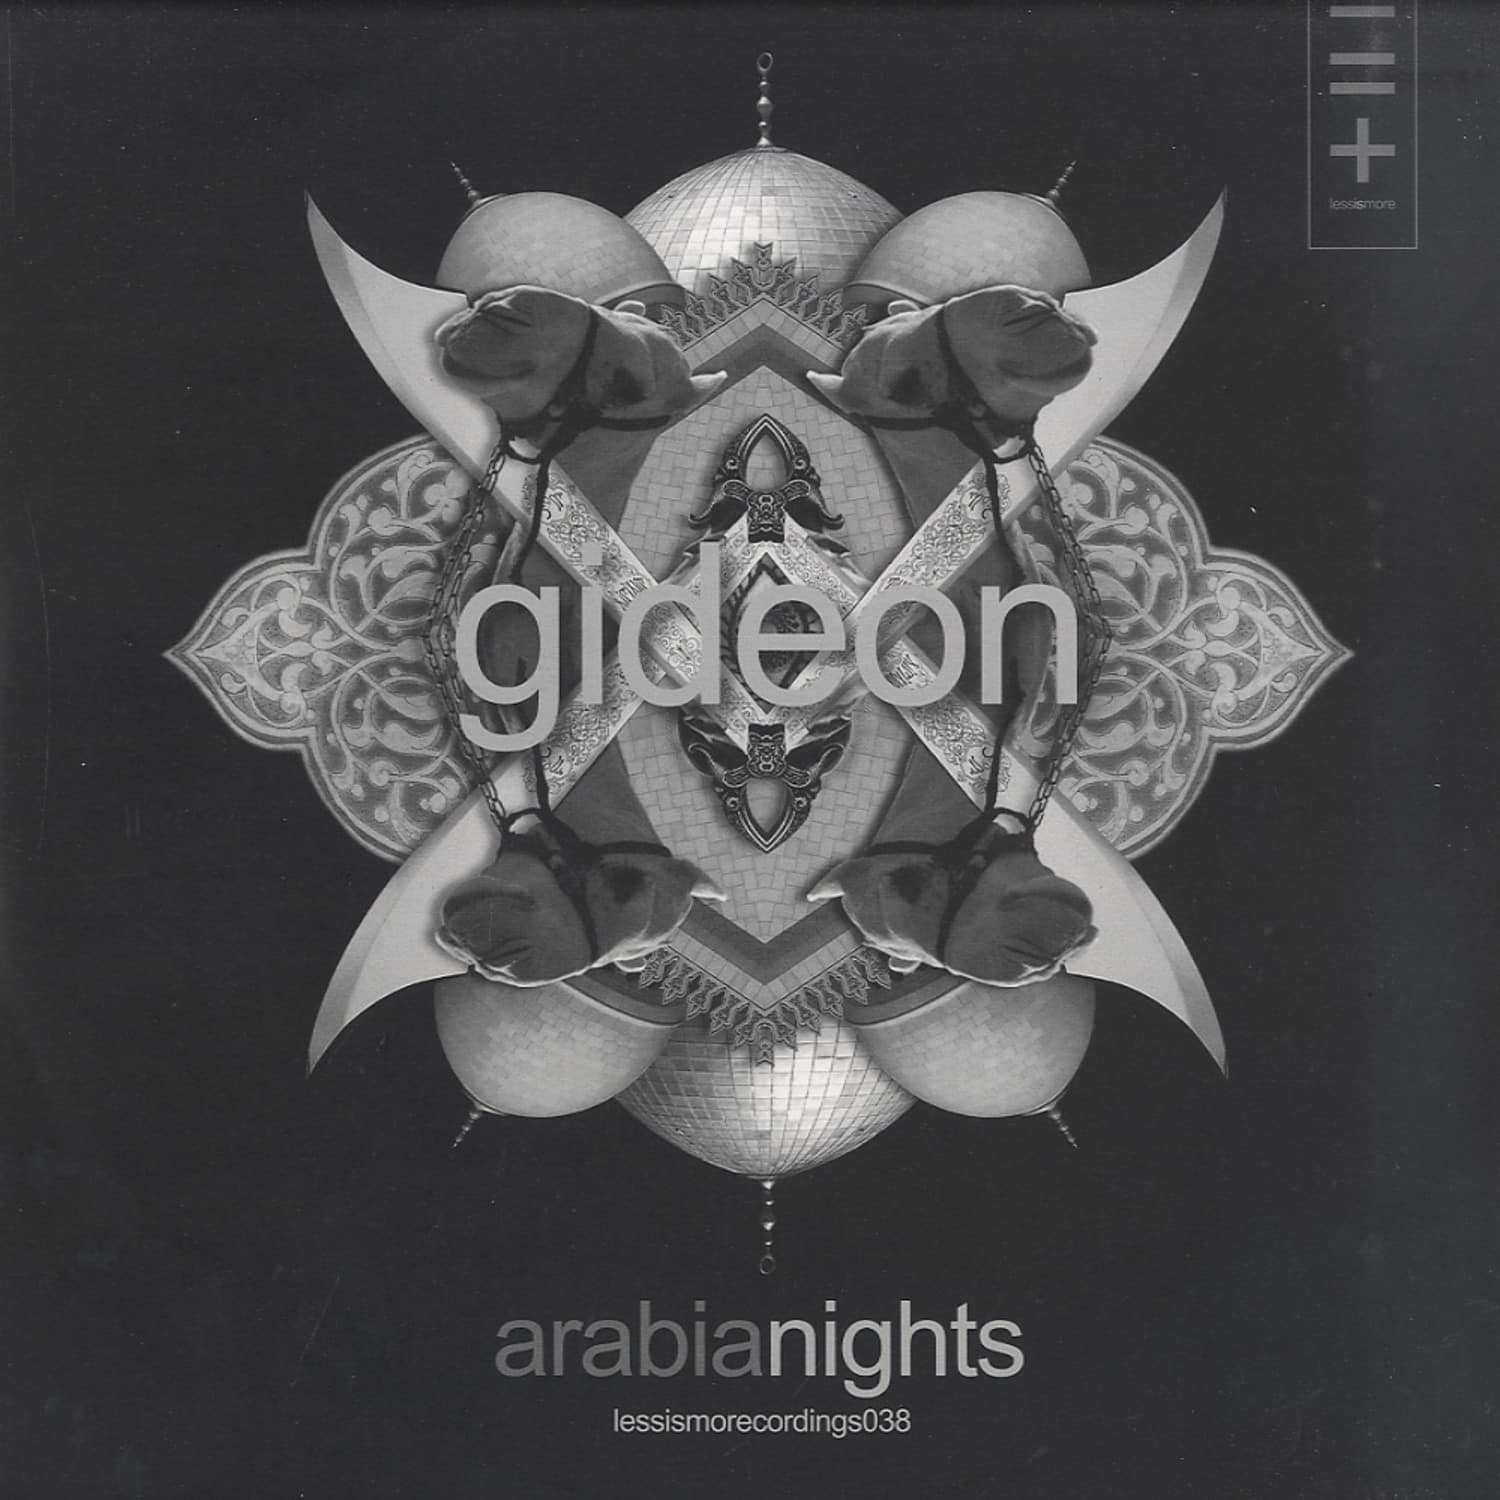 Gideon - ARABIAN NIGHTS